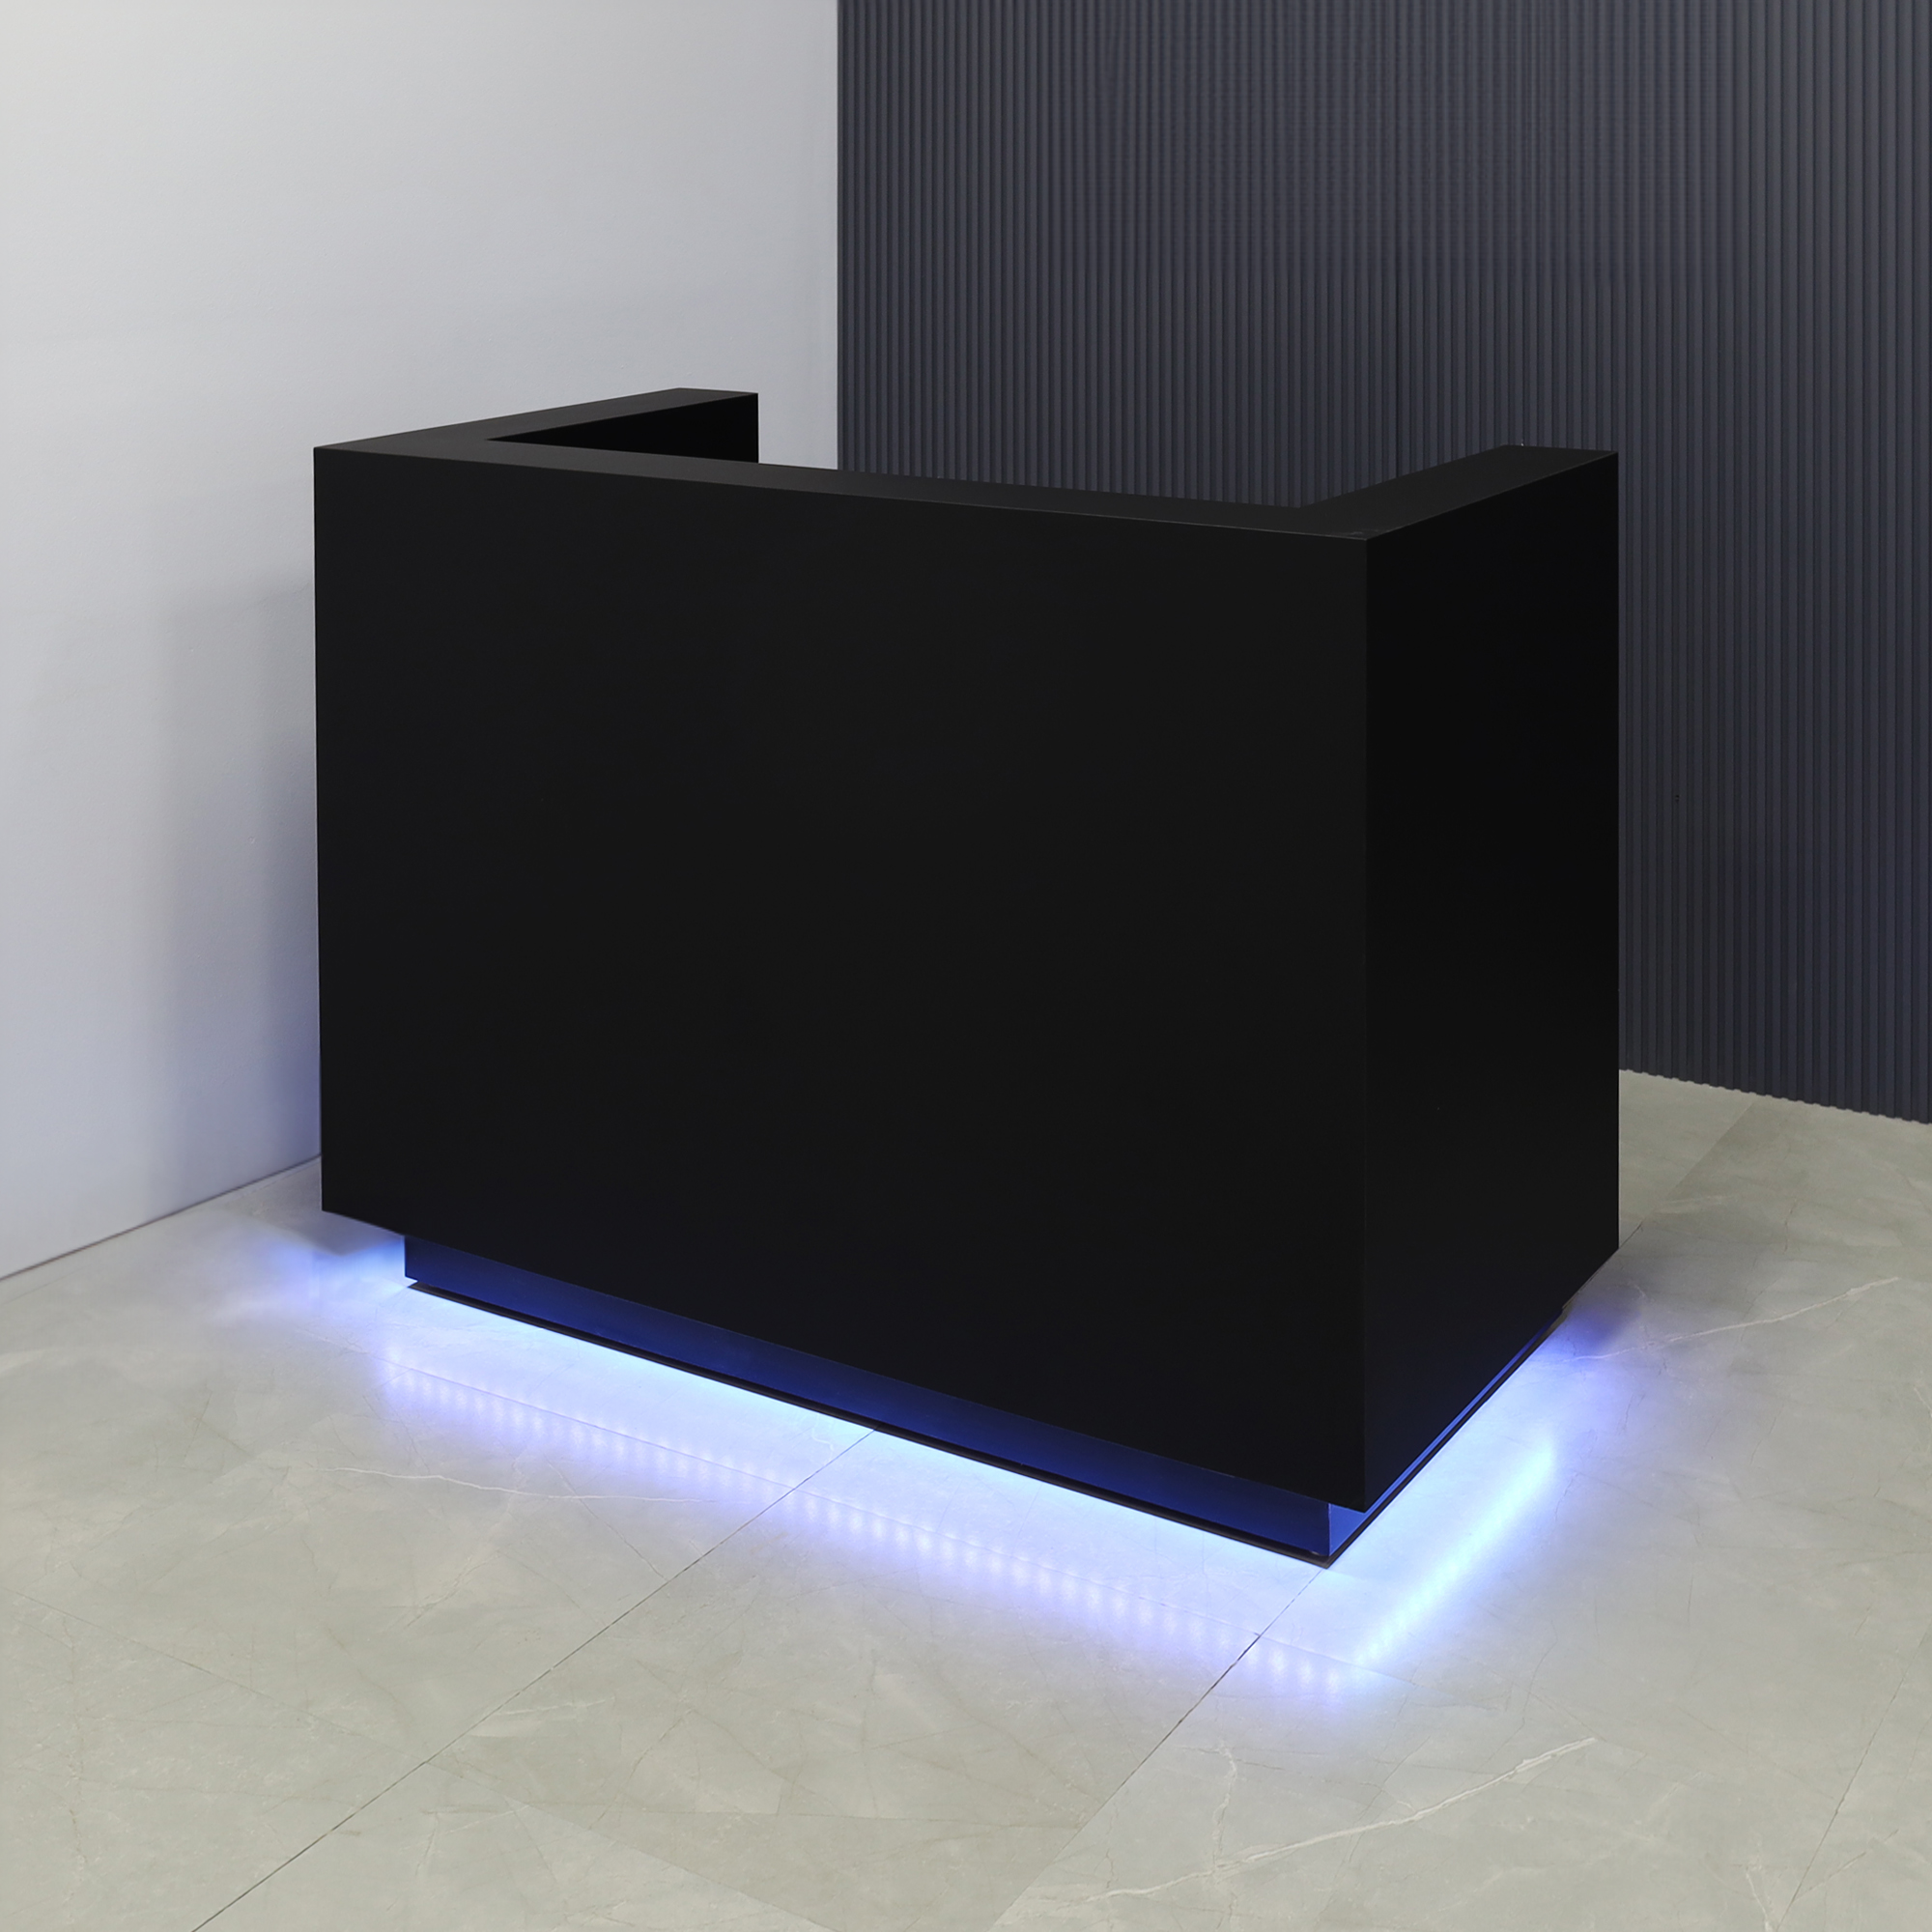 60-inch Dallas U-Shape Reception Desk in black traceless laminate main desk and black matte laminate toe-kick, with color LED, shown here.